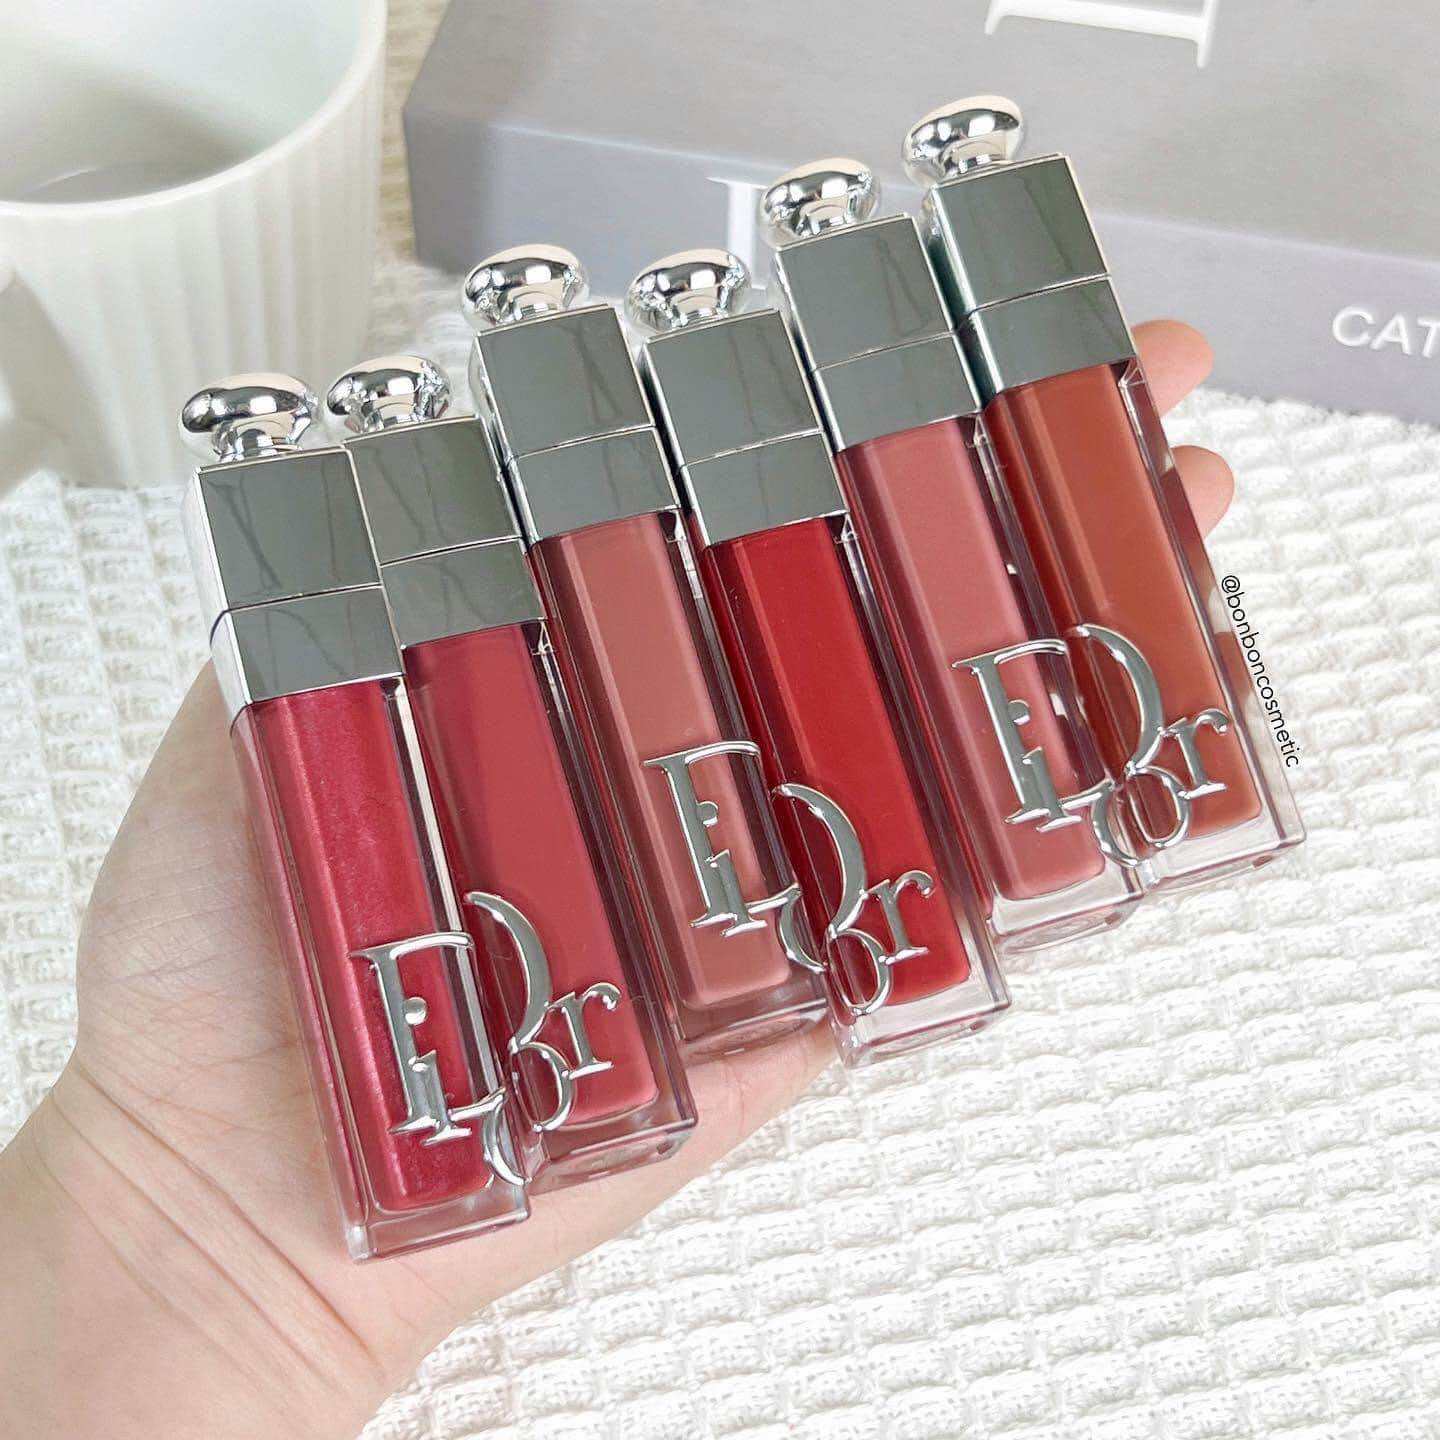 NEW 2023 Son dưỡng môi Dior Lip Maximizer các màu unbox